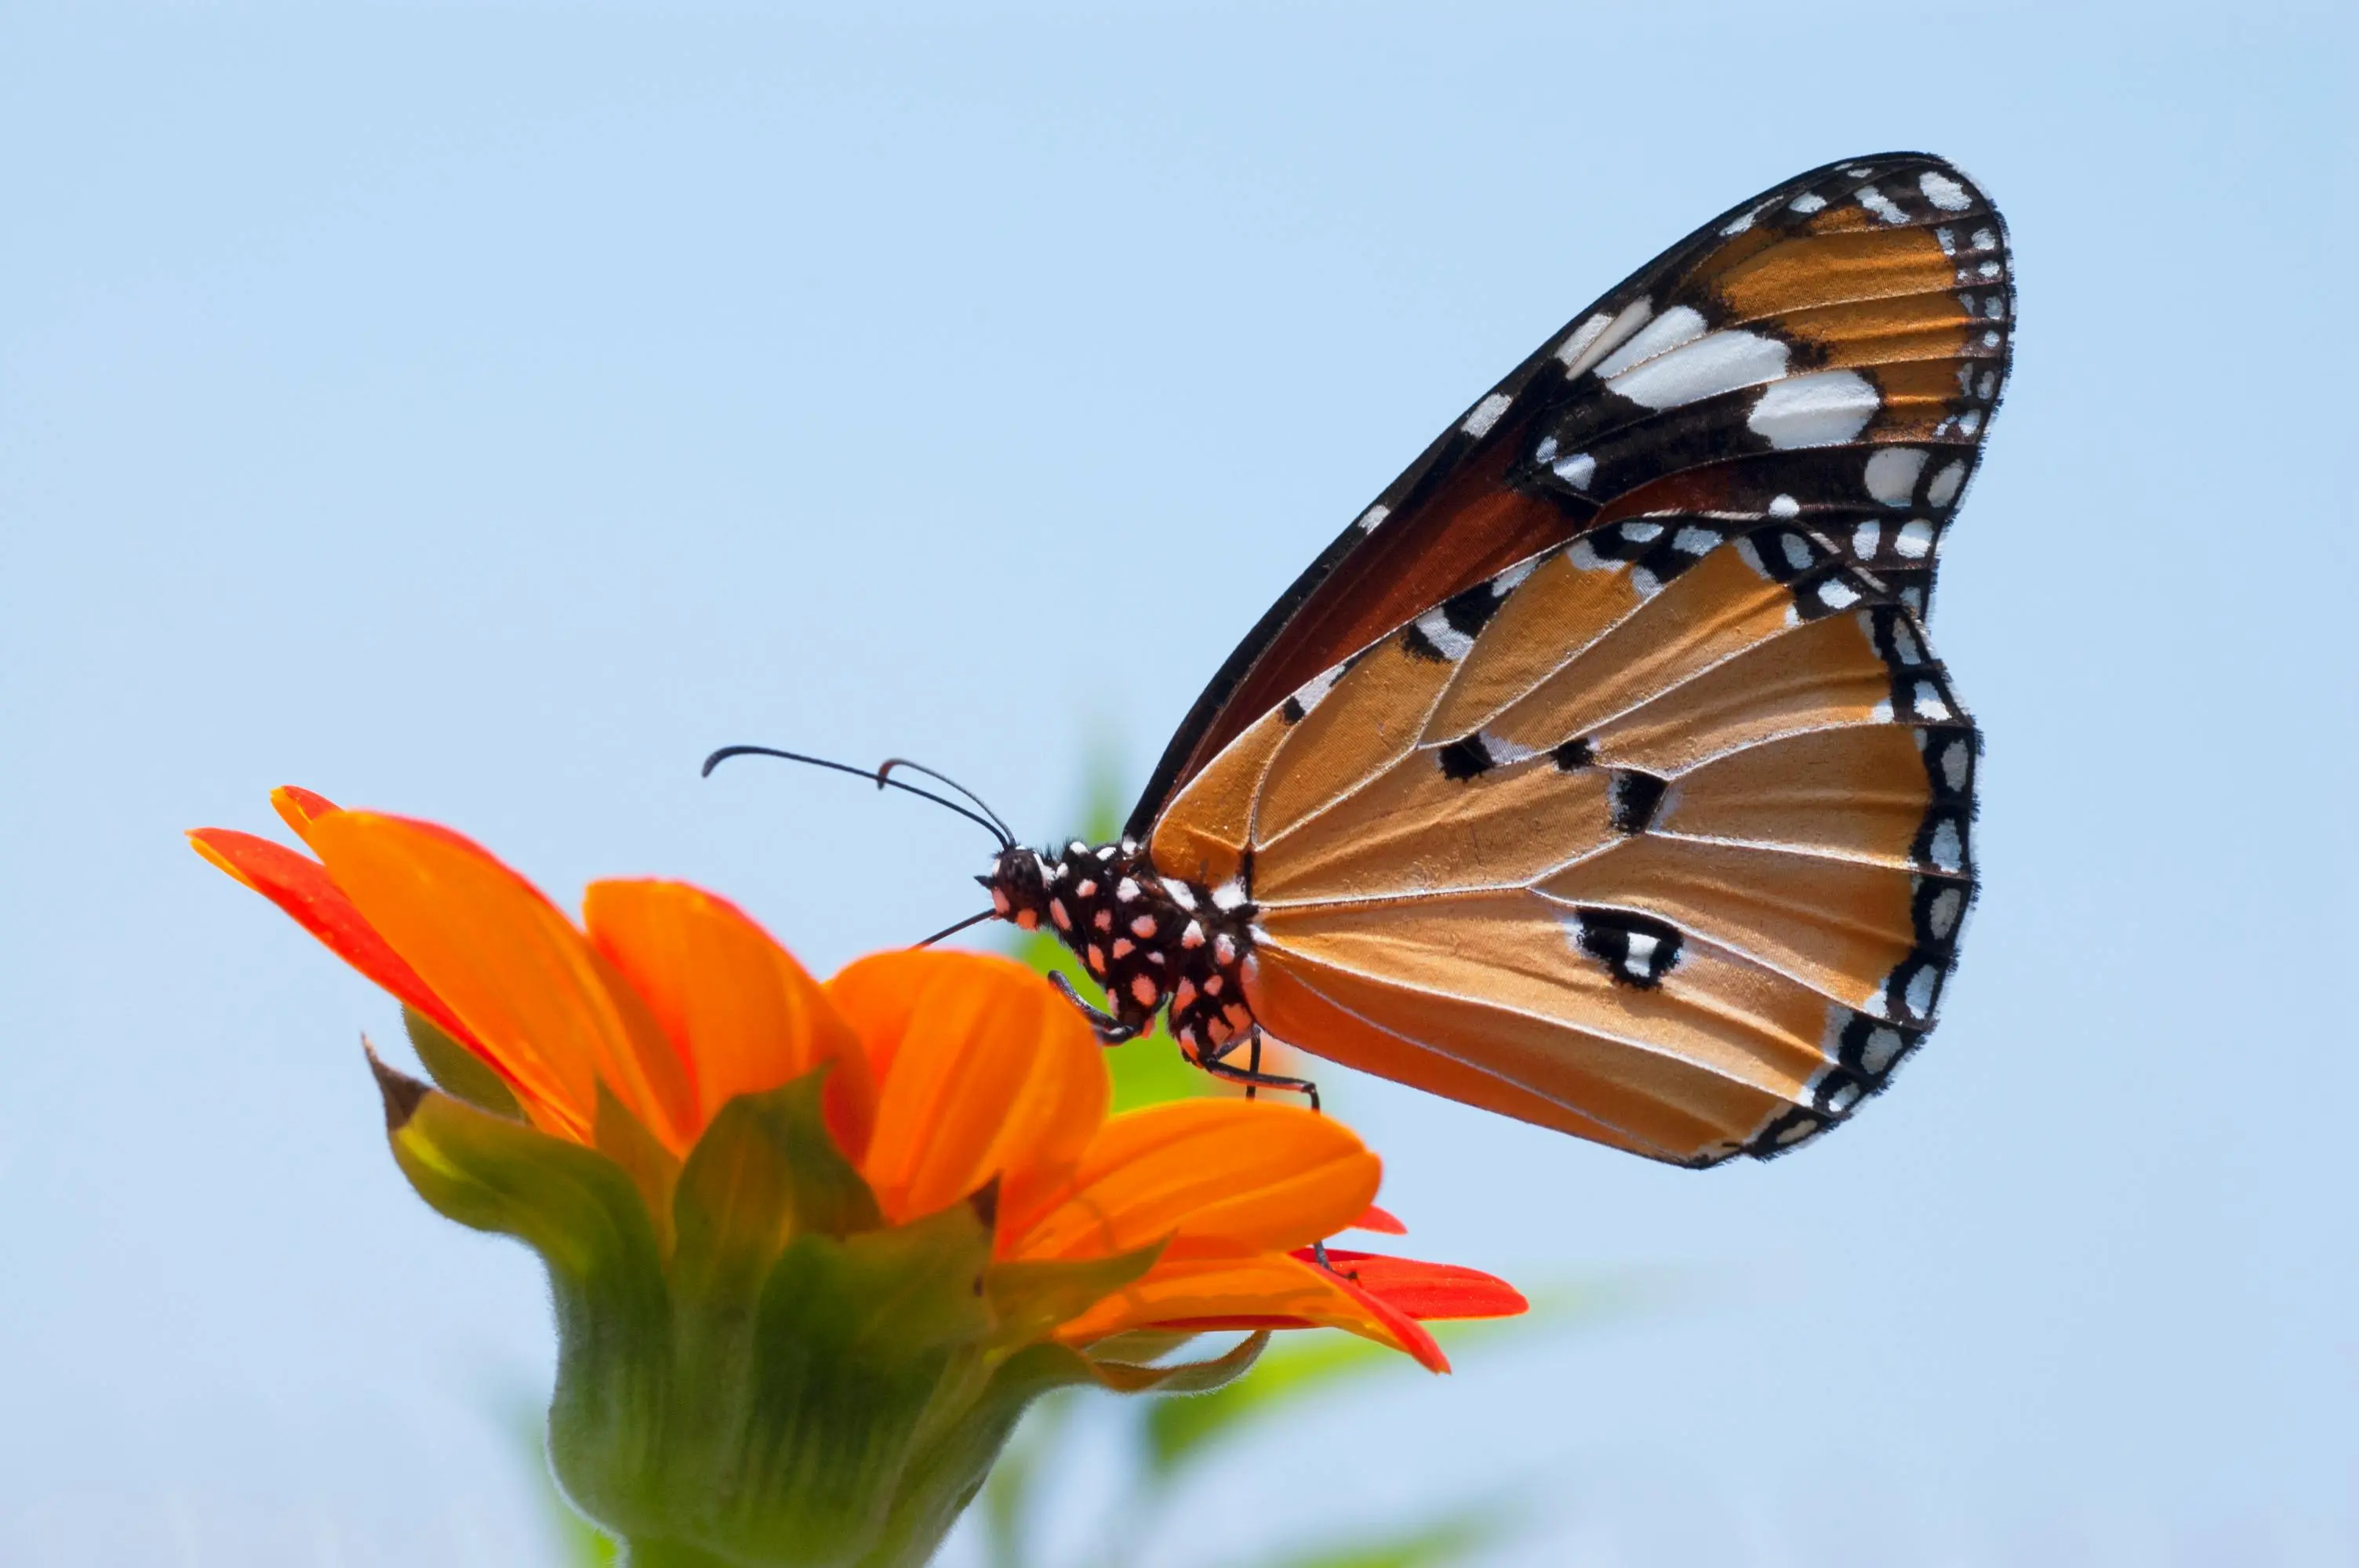 How to start butterfly garden, gardening, butterflies, leisure, nature, relaxation